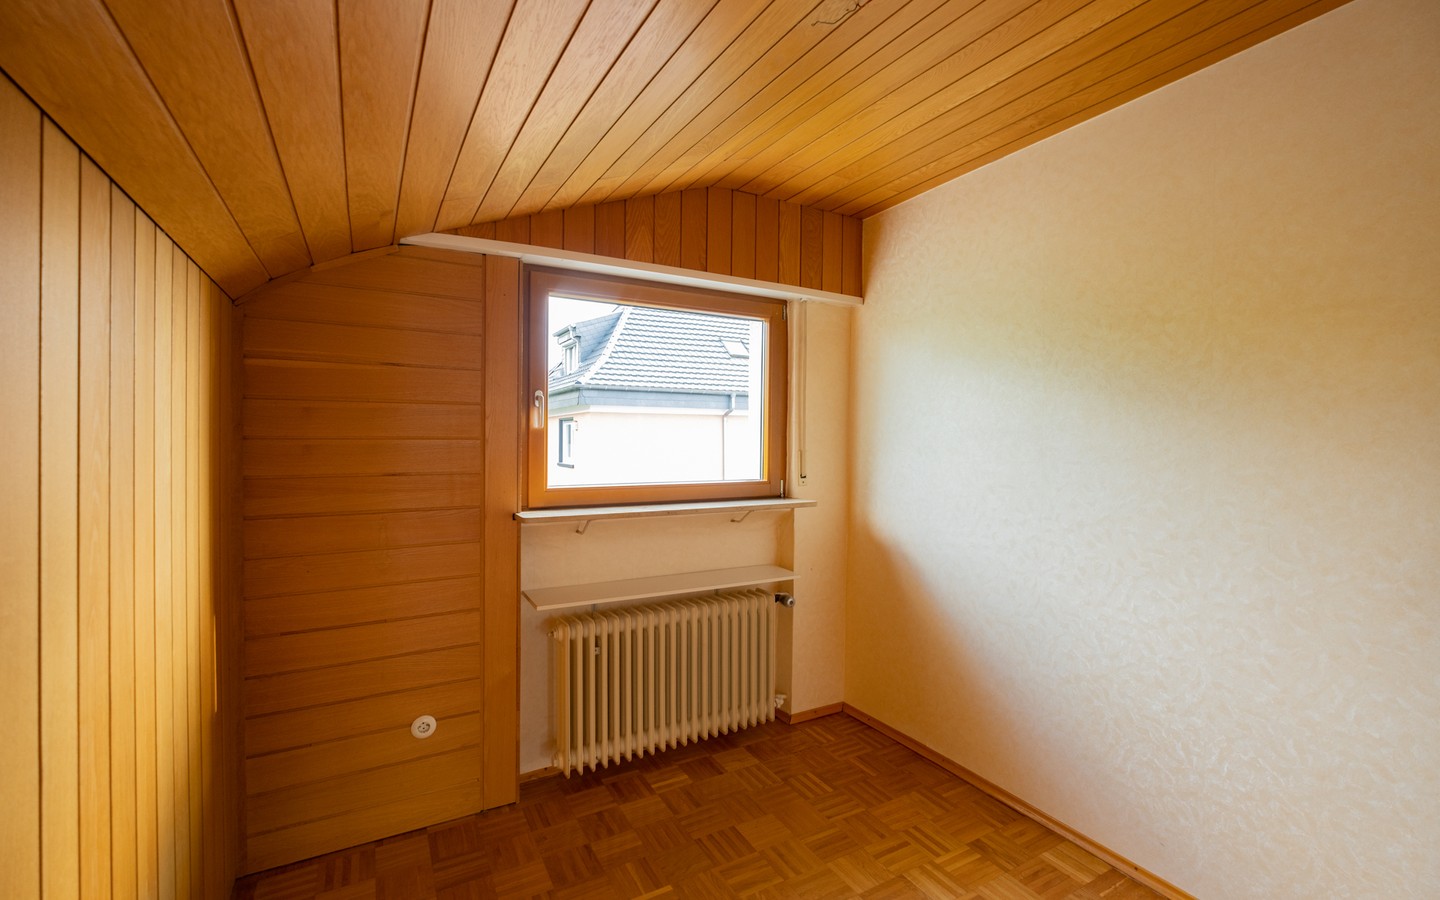 Zimmer 3 im DG - Leimen: freistehendes Haus in Splitlevelbauweise, mit 2 Garagen, 2 Stellplätzen und Garten